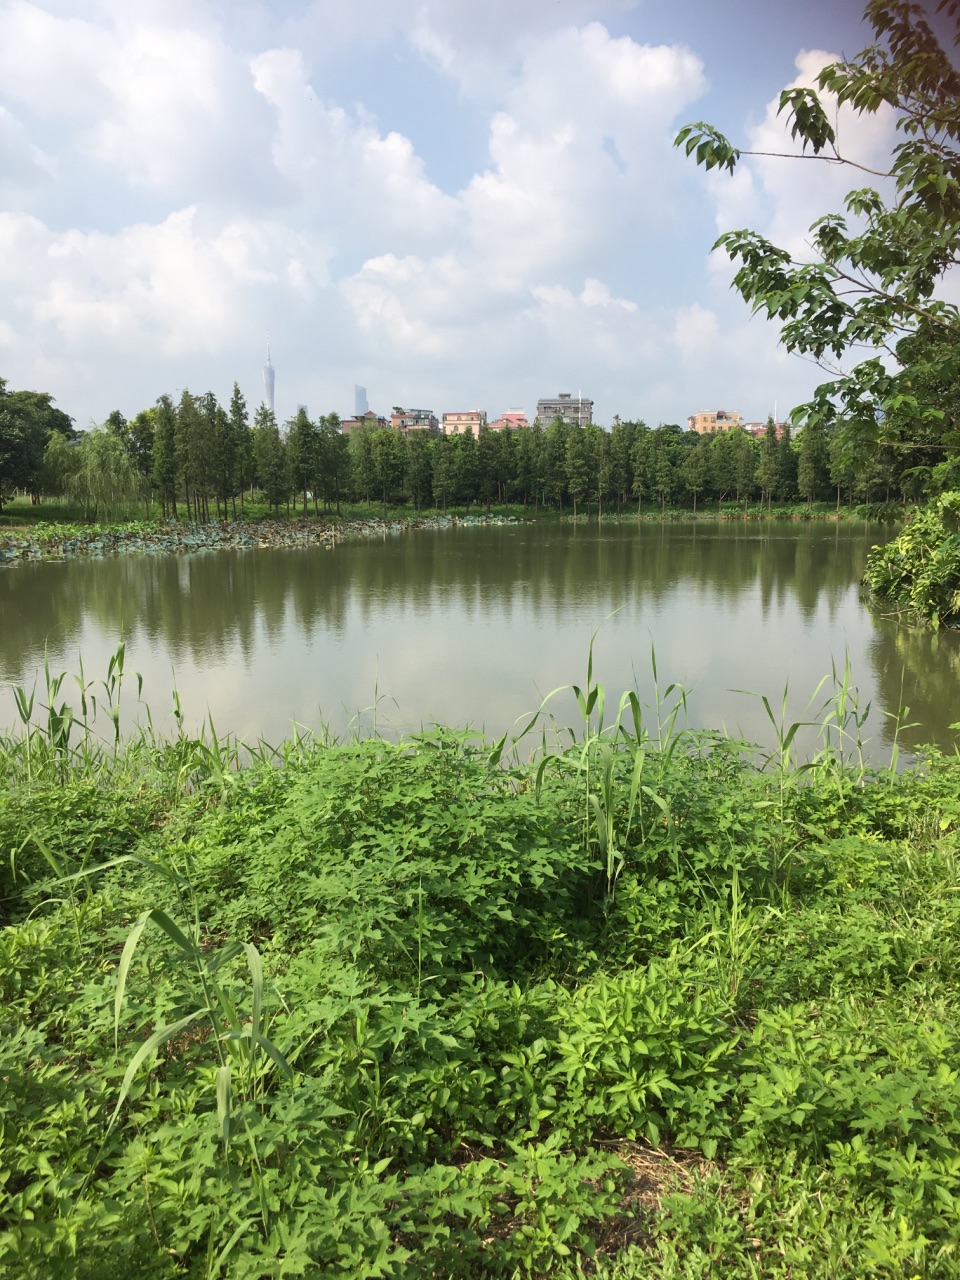 【携程攻略】广州海珠湿地公园好玩吗,广州海珠湿地样